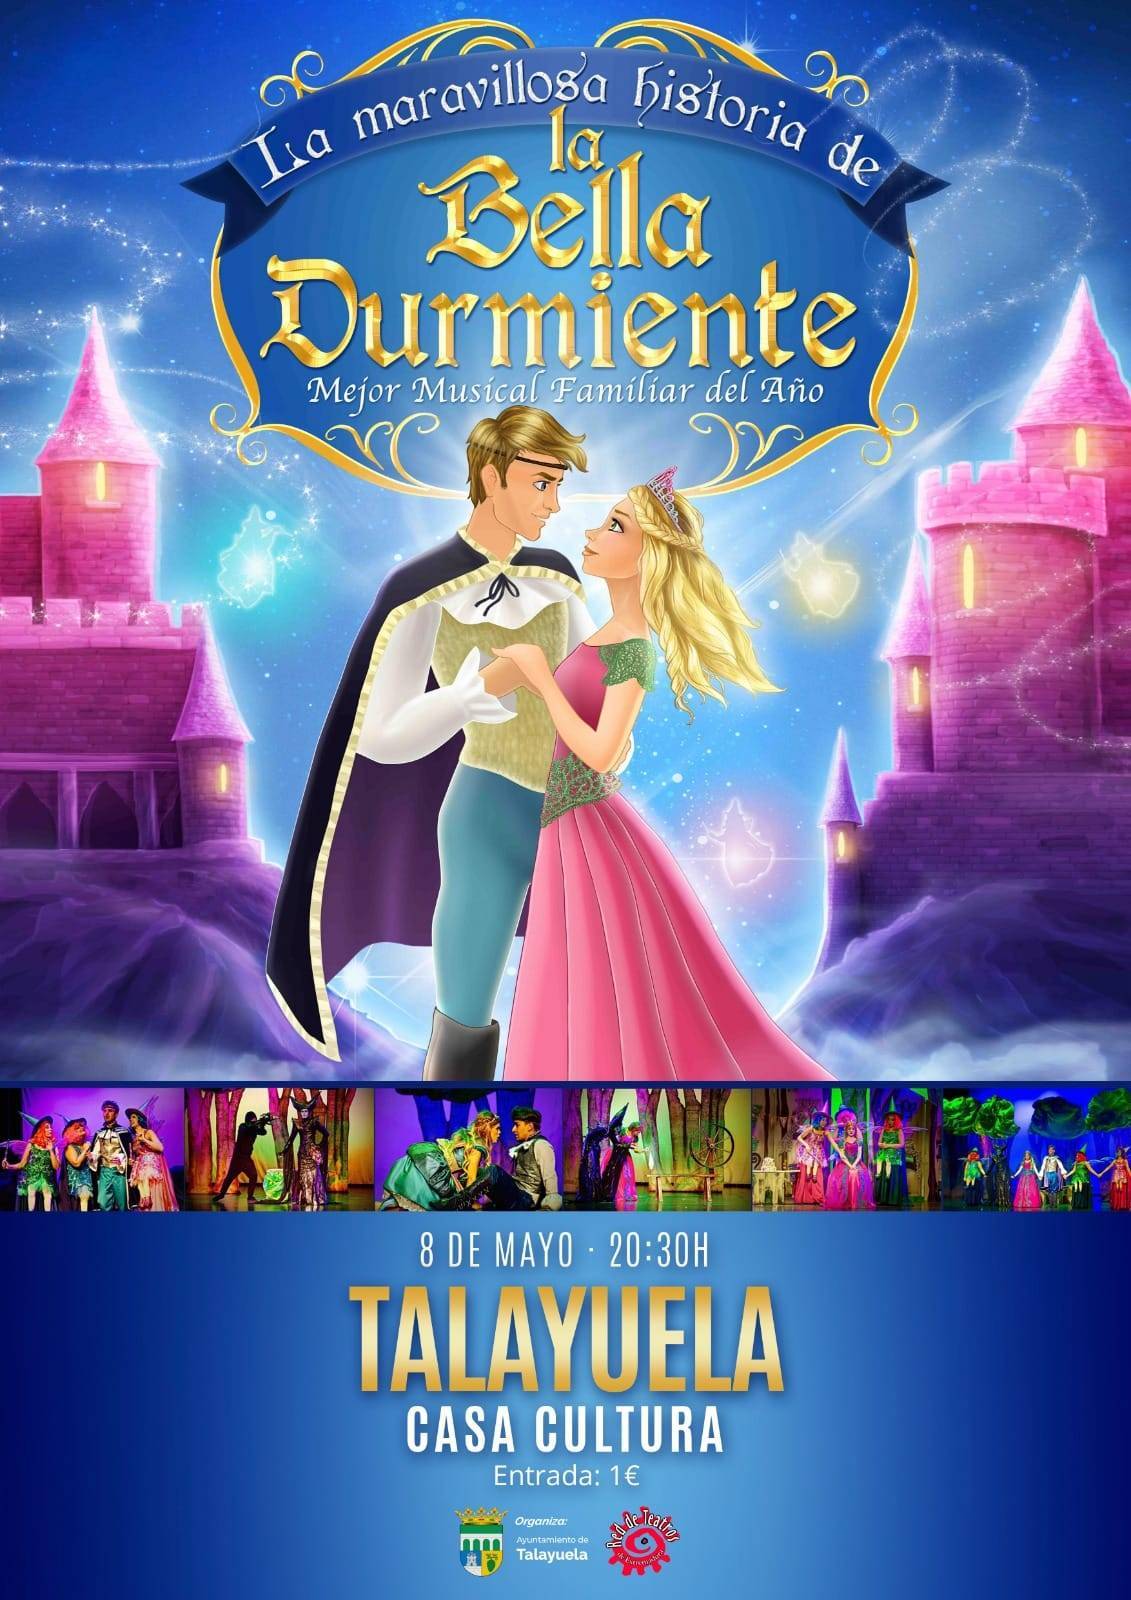 La maravillosa historia de la Bella Durmiente (2021) - Talayuela (Cáceres)